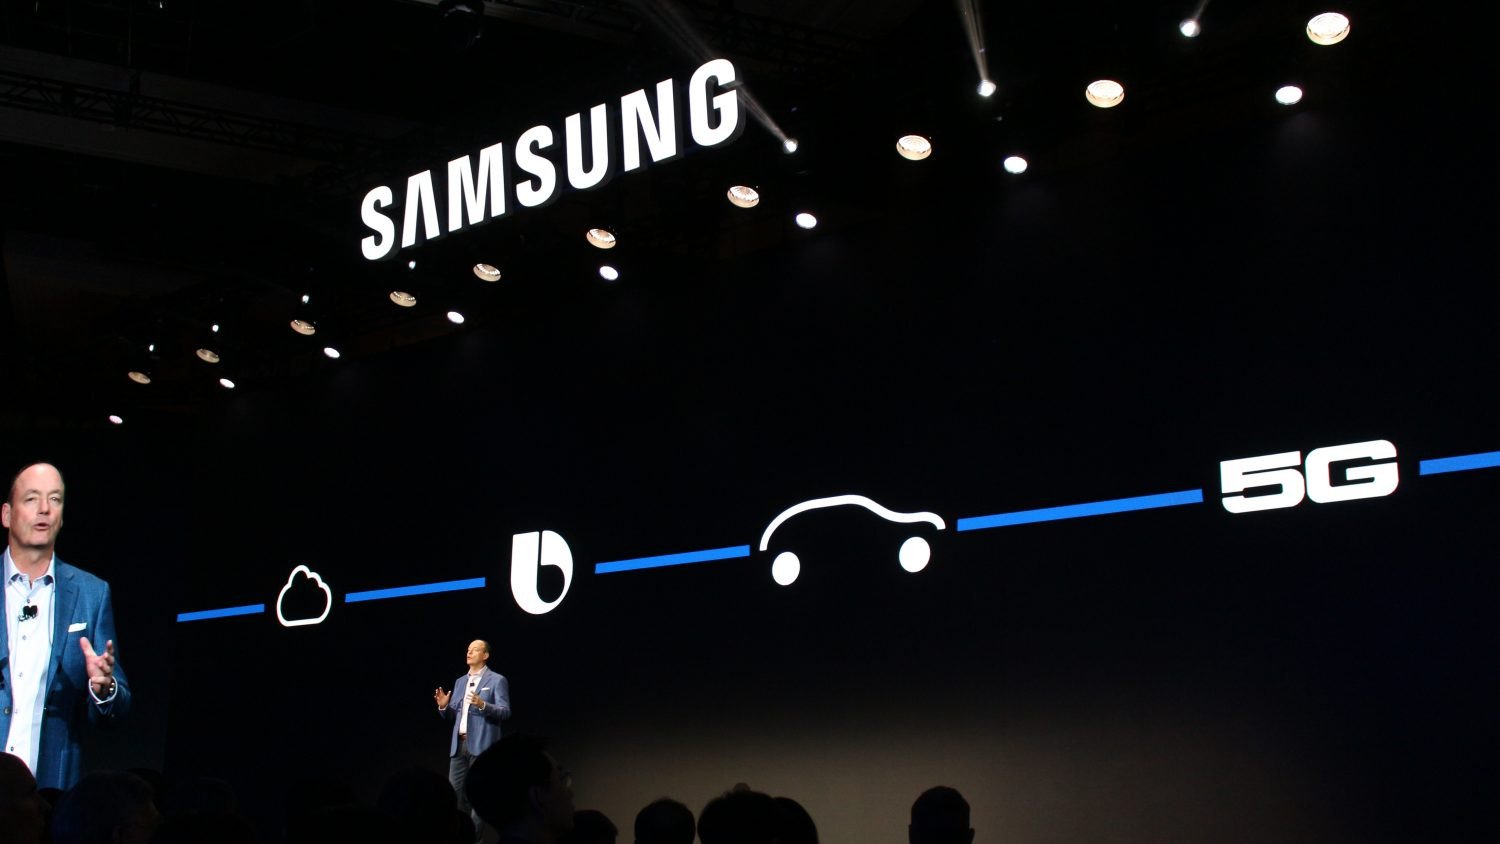 5G-fiore all'occhiello di Samsung è uno dei tre